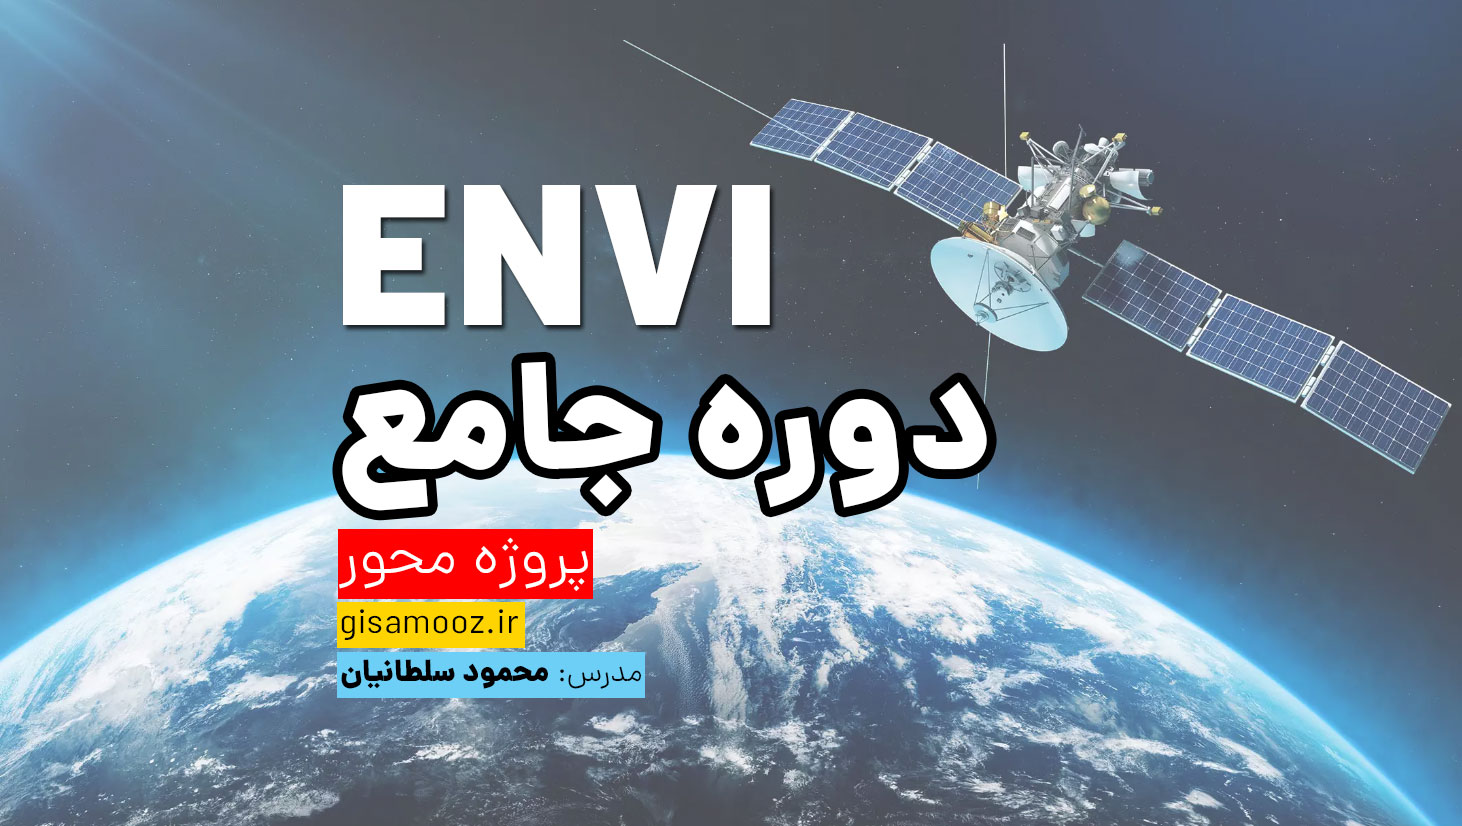 دوره جامع پروژه محور ENVI | پردازش تصاویر ماهواره ای در ENVI 5.6